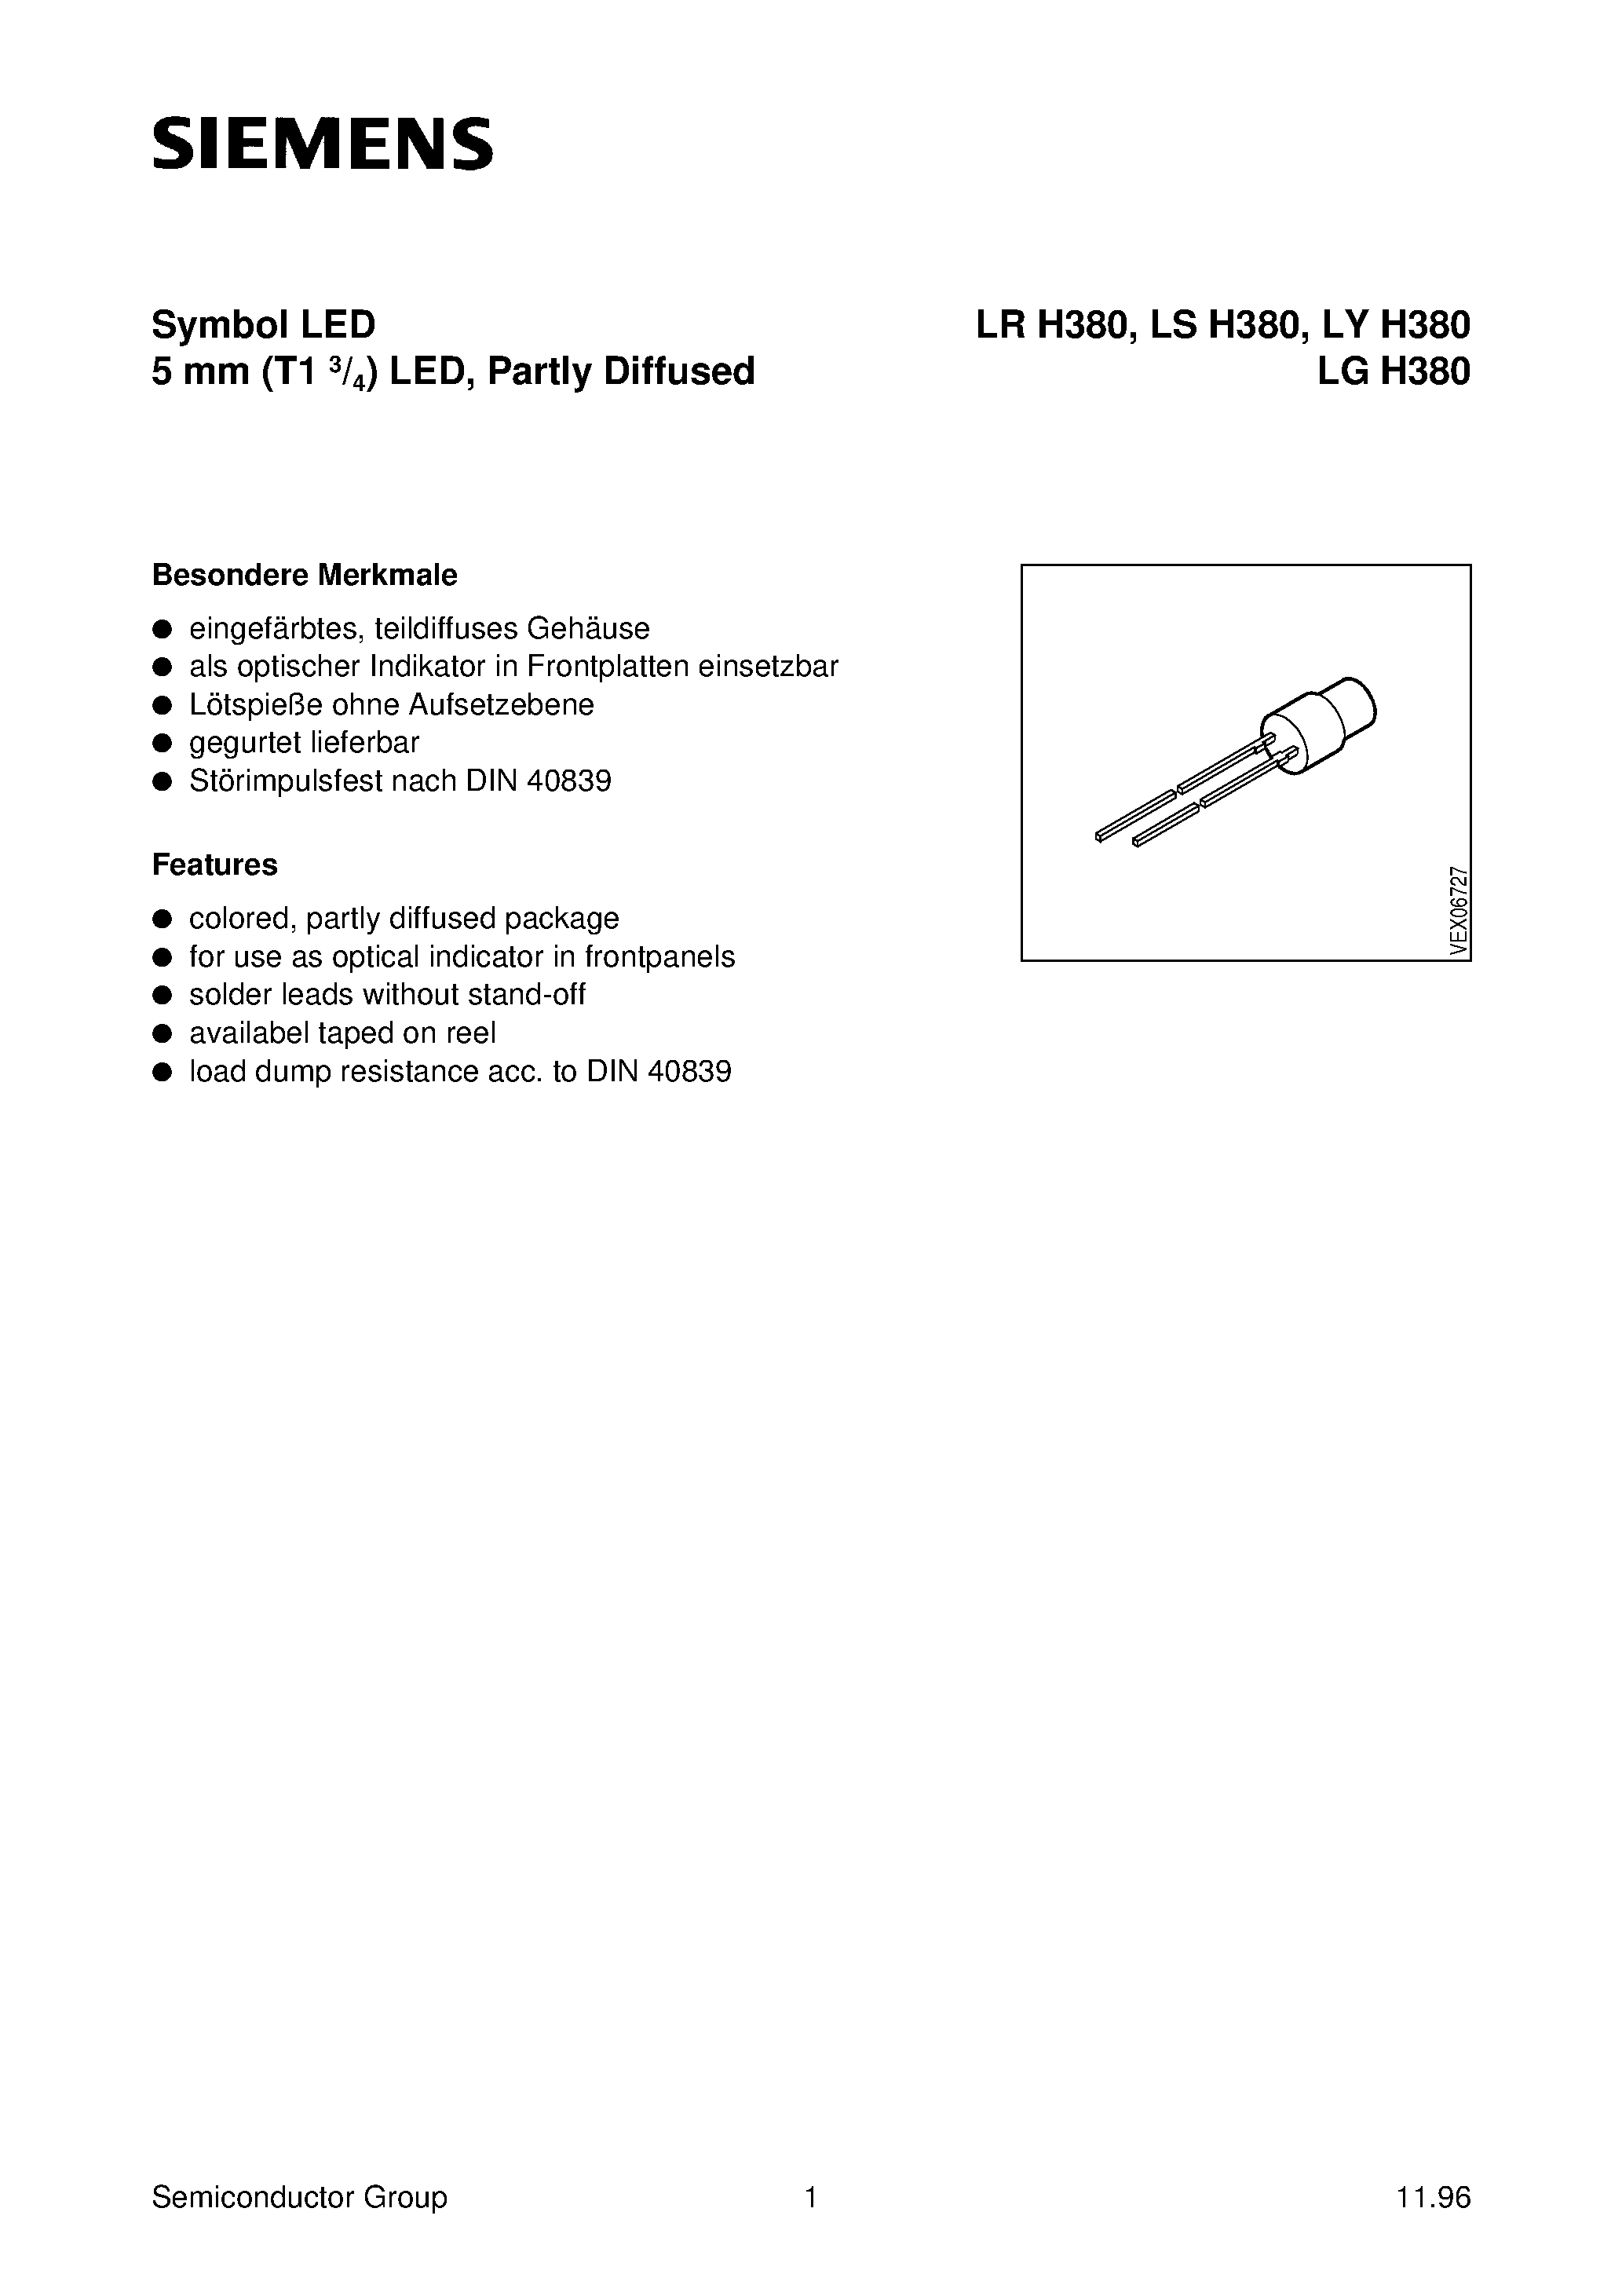 Datasheet LYH380-H - CYLINDRICAL LED LAMP page 1